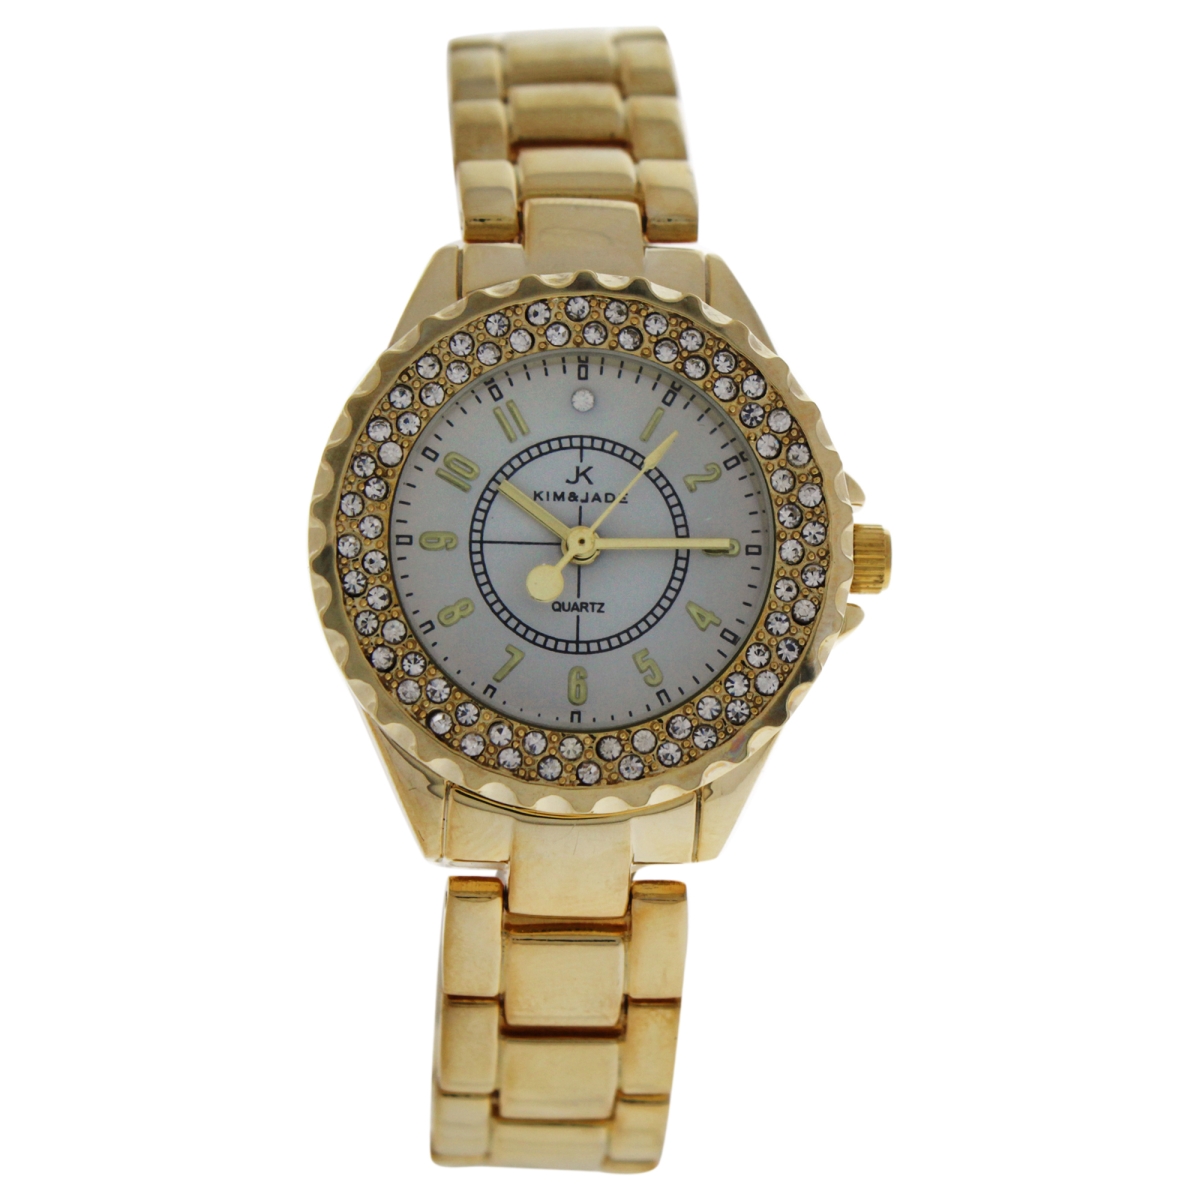 Picture of Kim & Jade W-WAT-1463 Gold Stainless Steel Bracelet Watch for Women - 2033L-GW